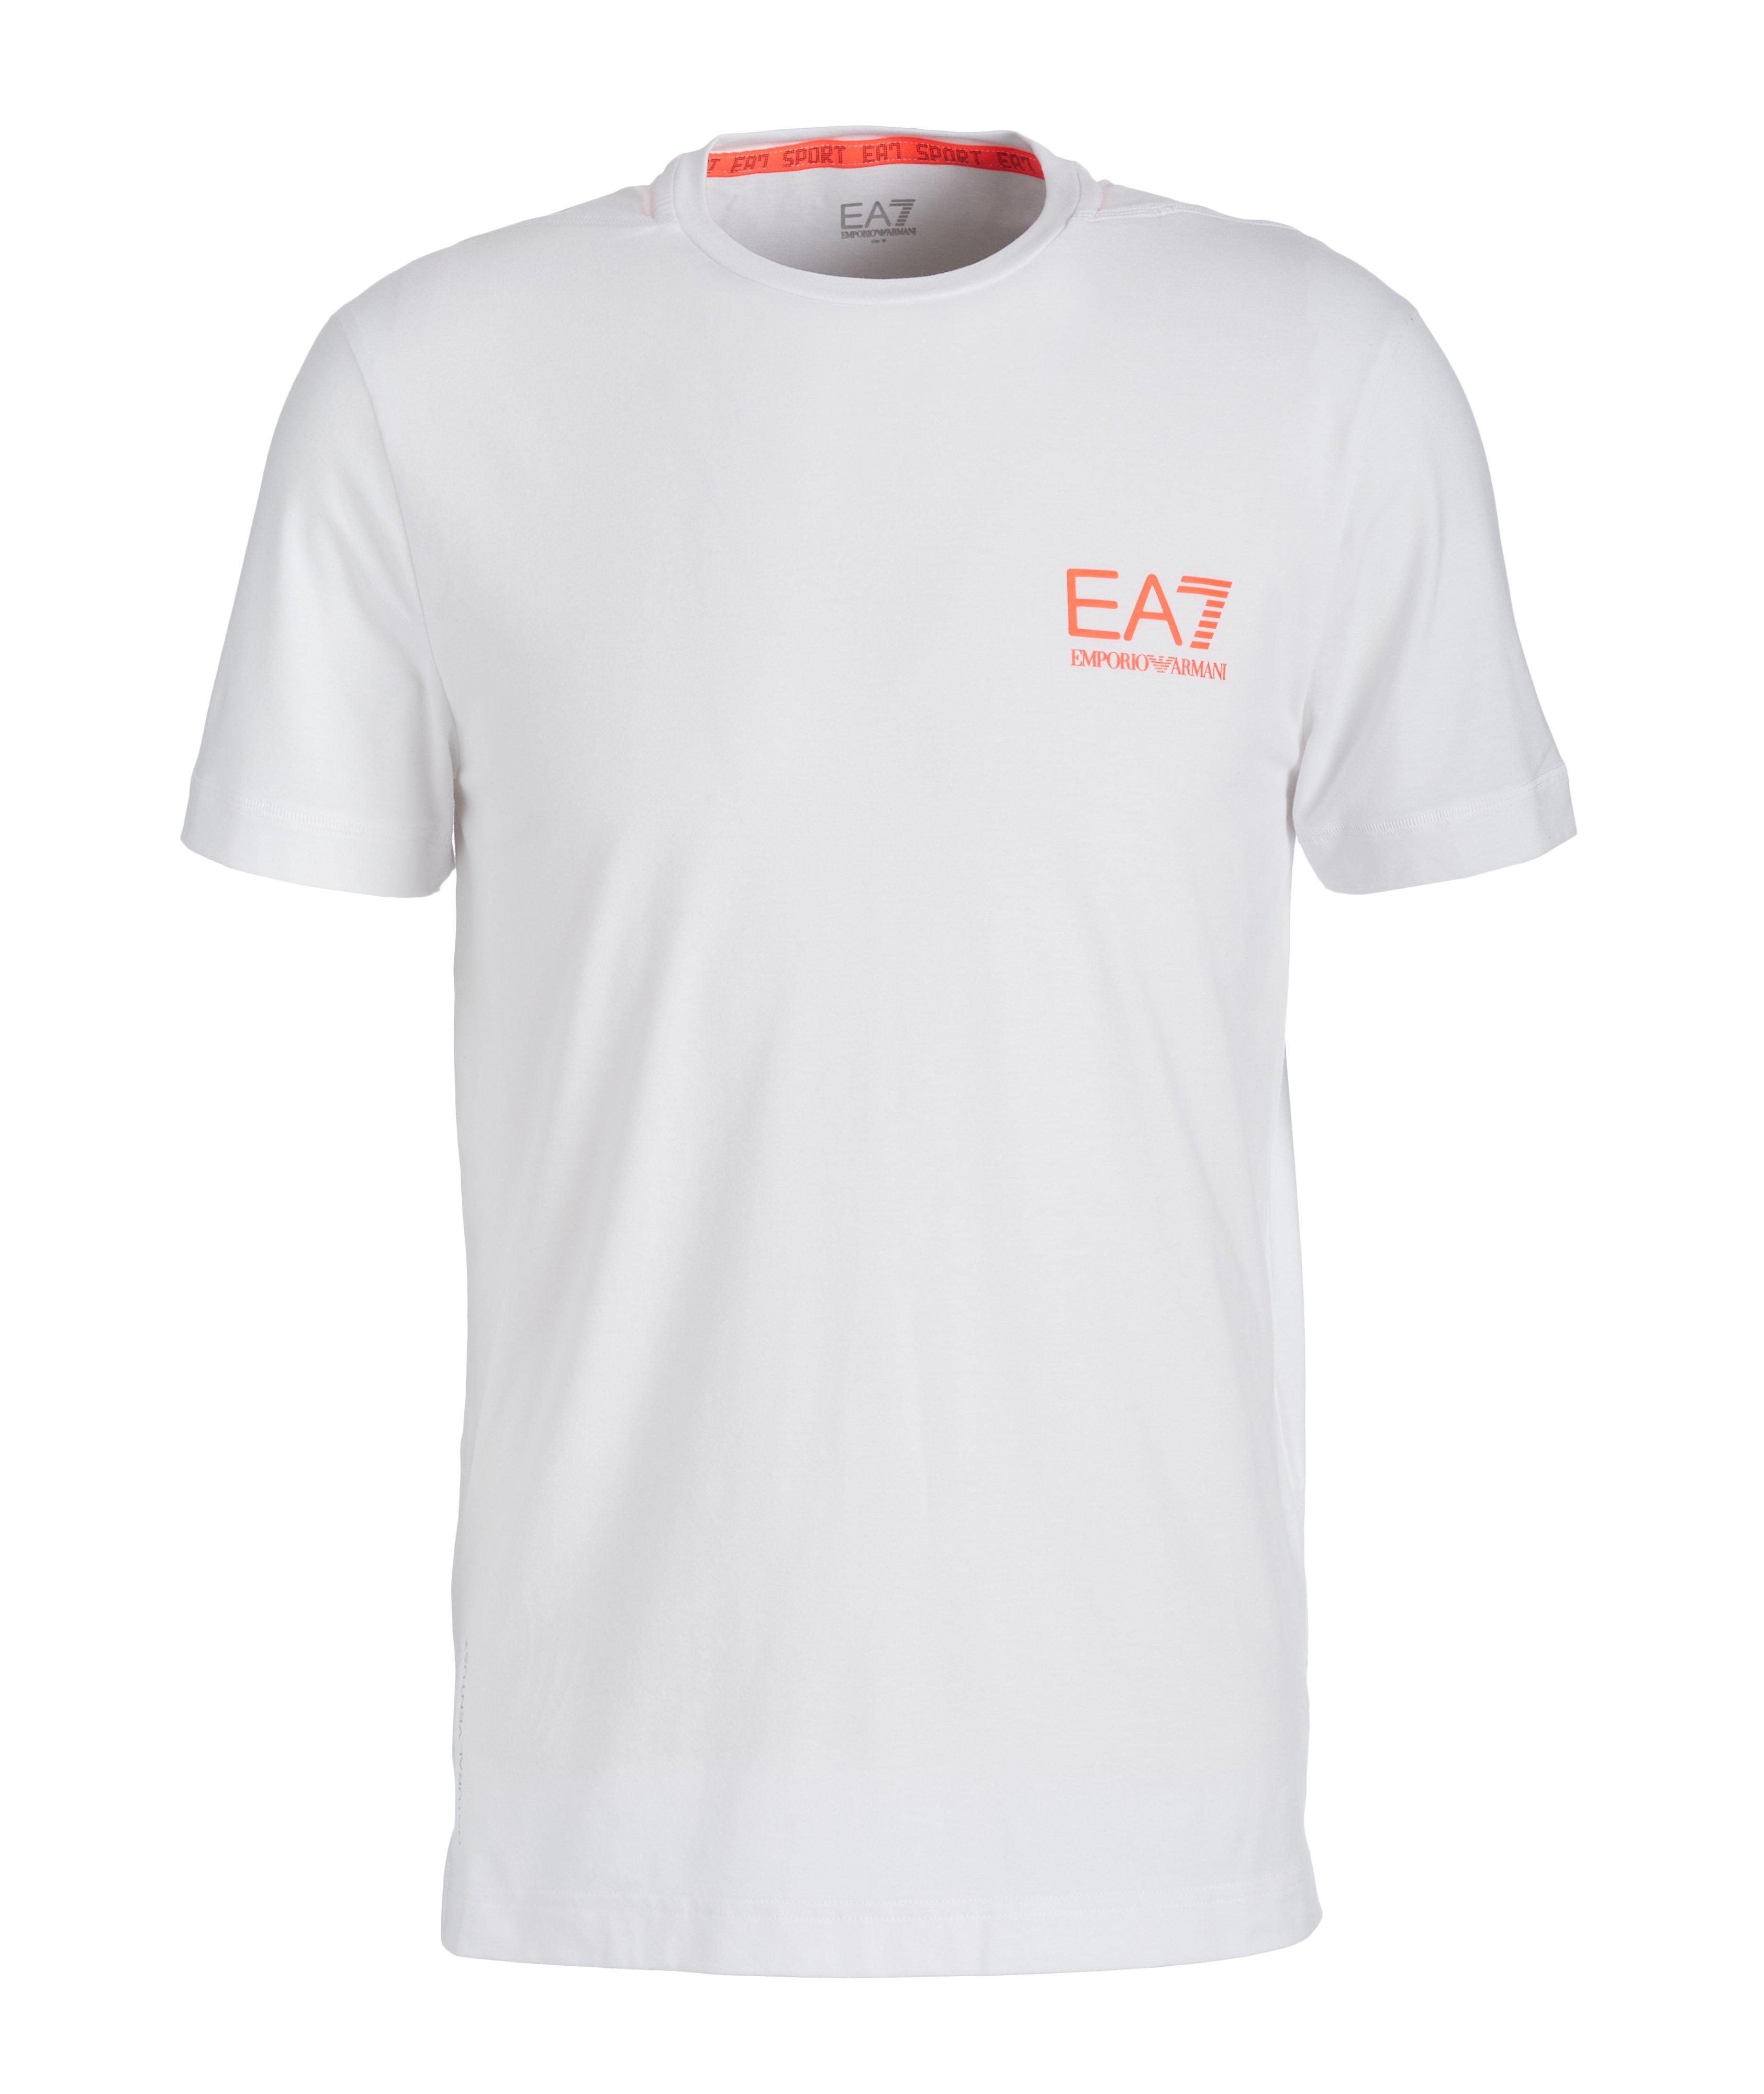 T-shirt en coton extensible, collection EA7 image 0